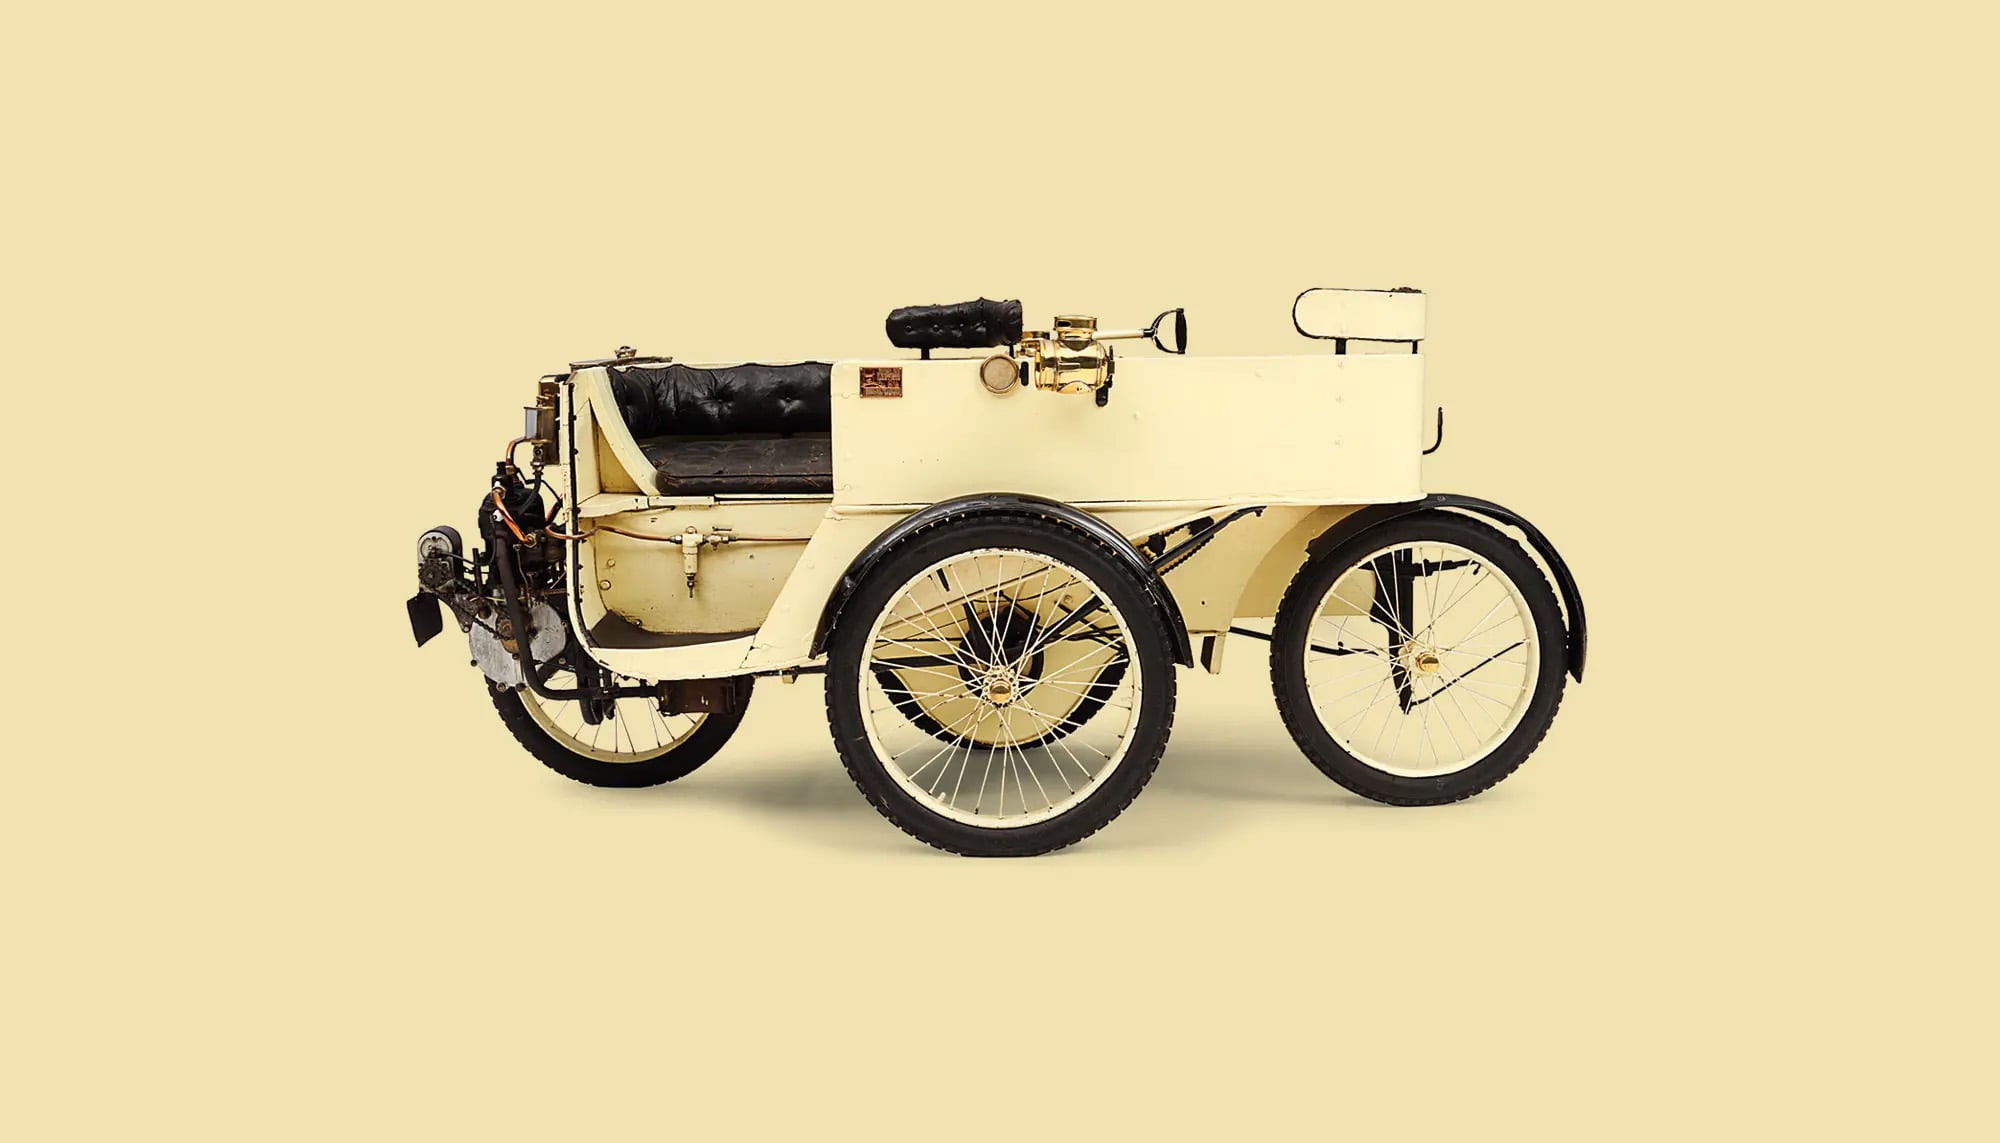 Bekijk Sunbeam-Mabley Motor Sociable in het Louwman Museum